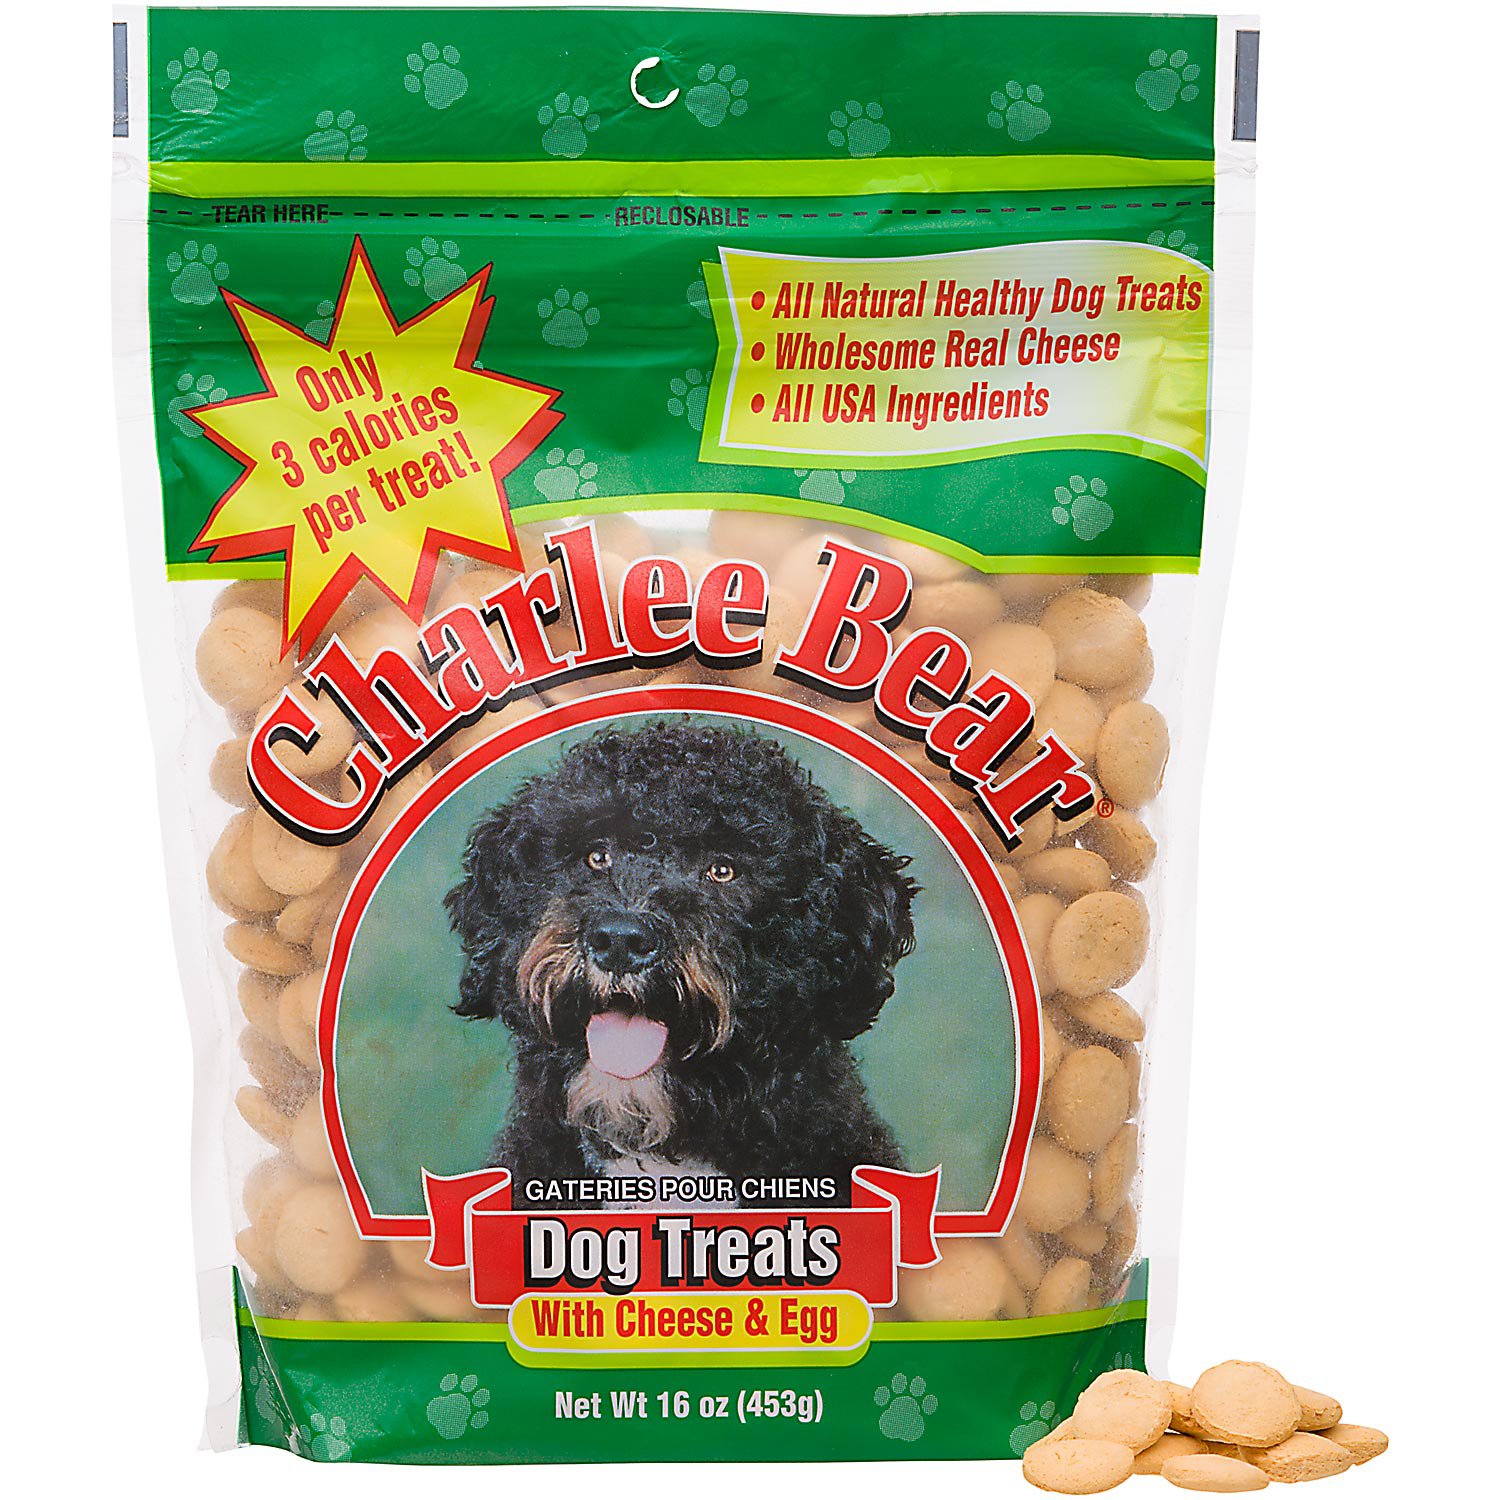 Charlee Bear Dog Treats with Cheese 